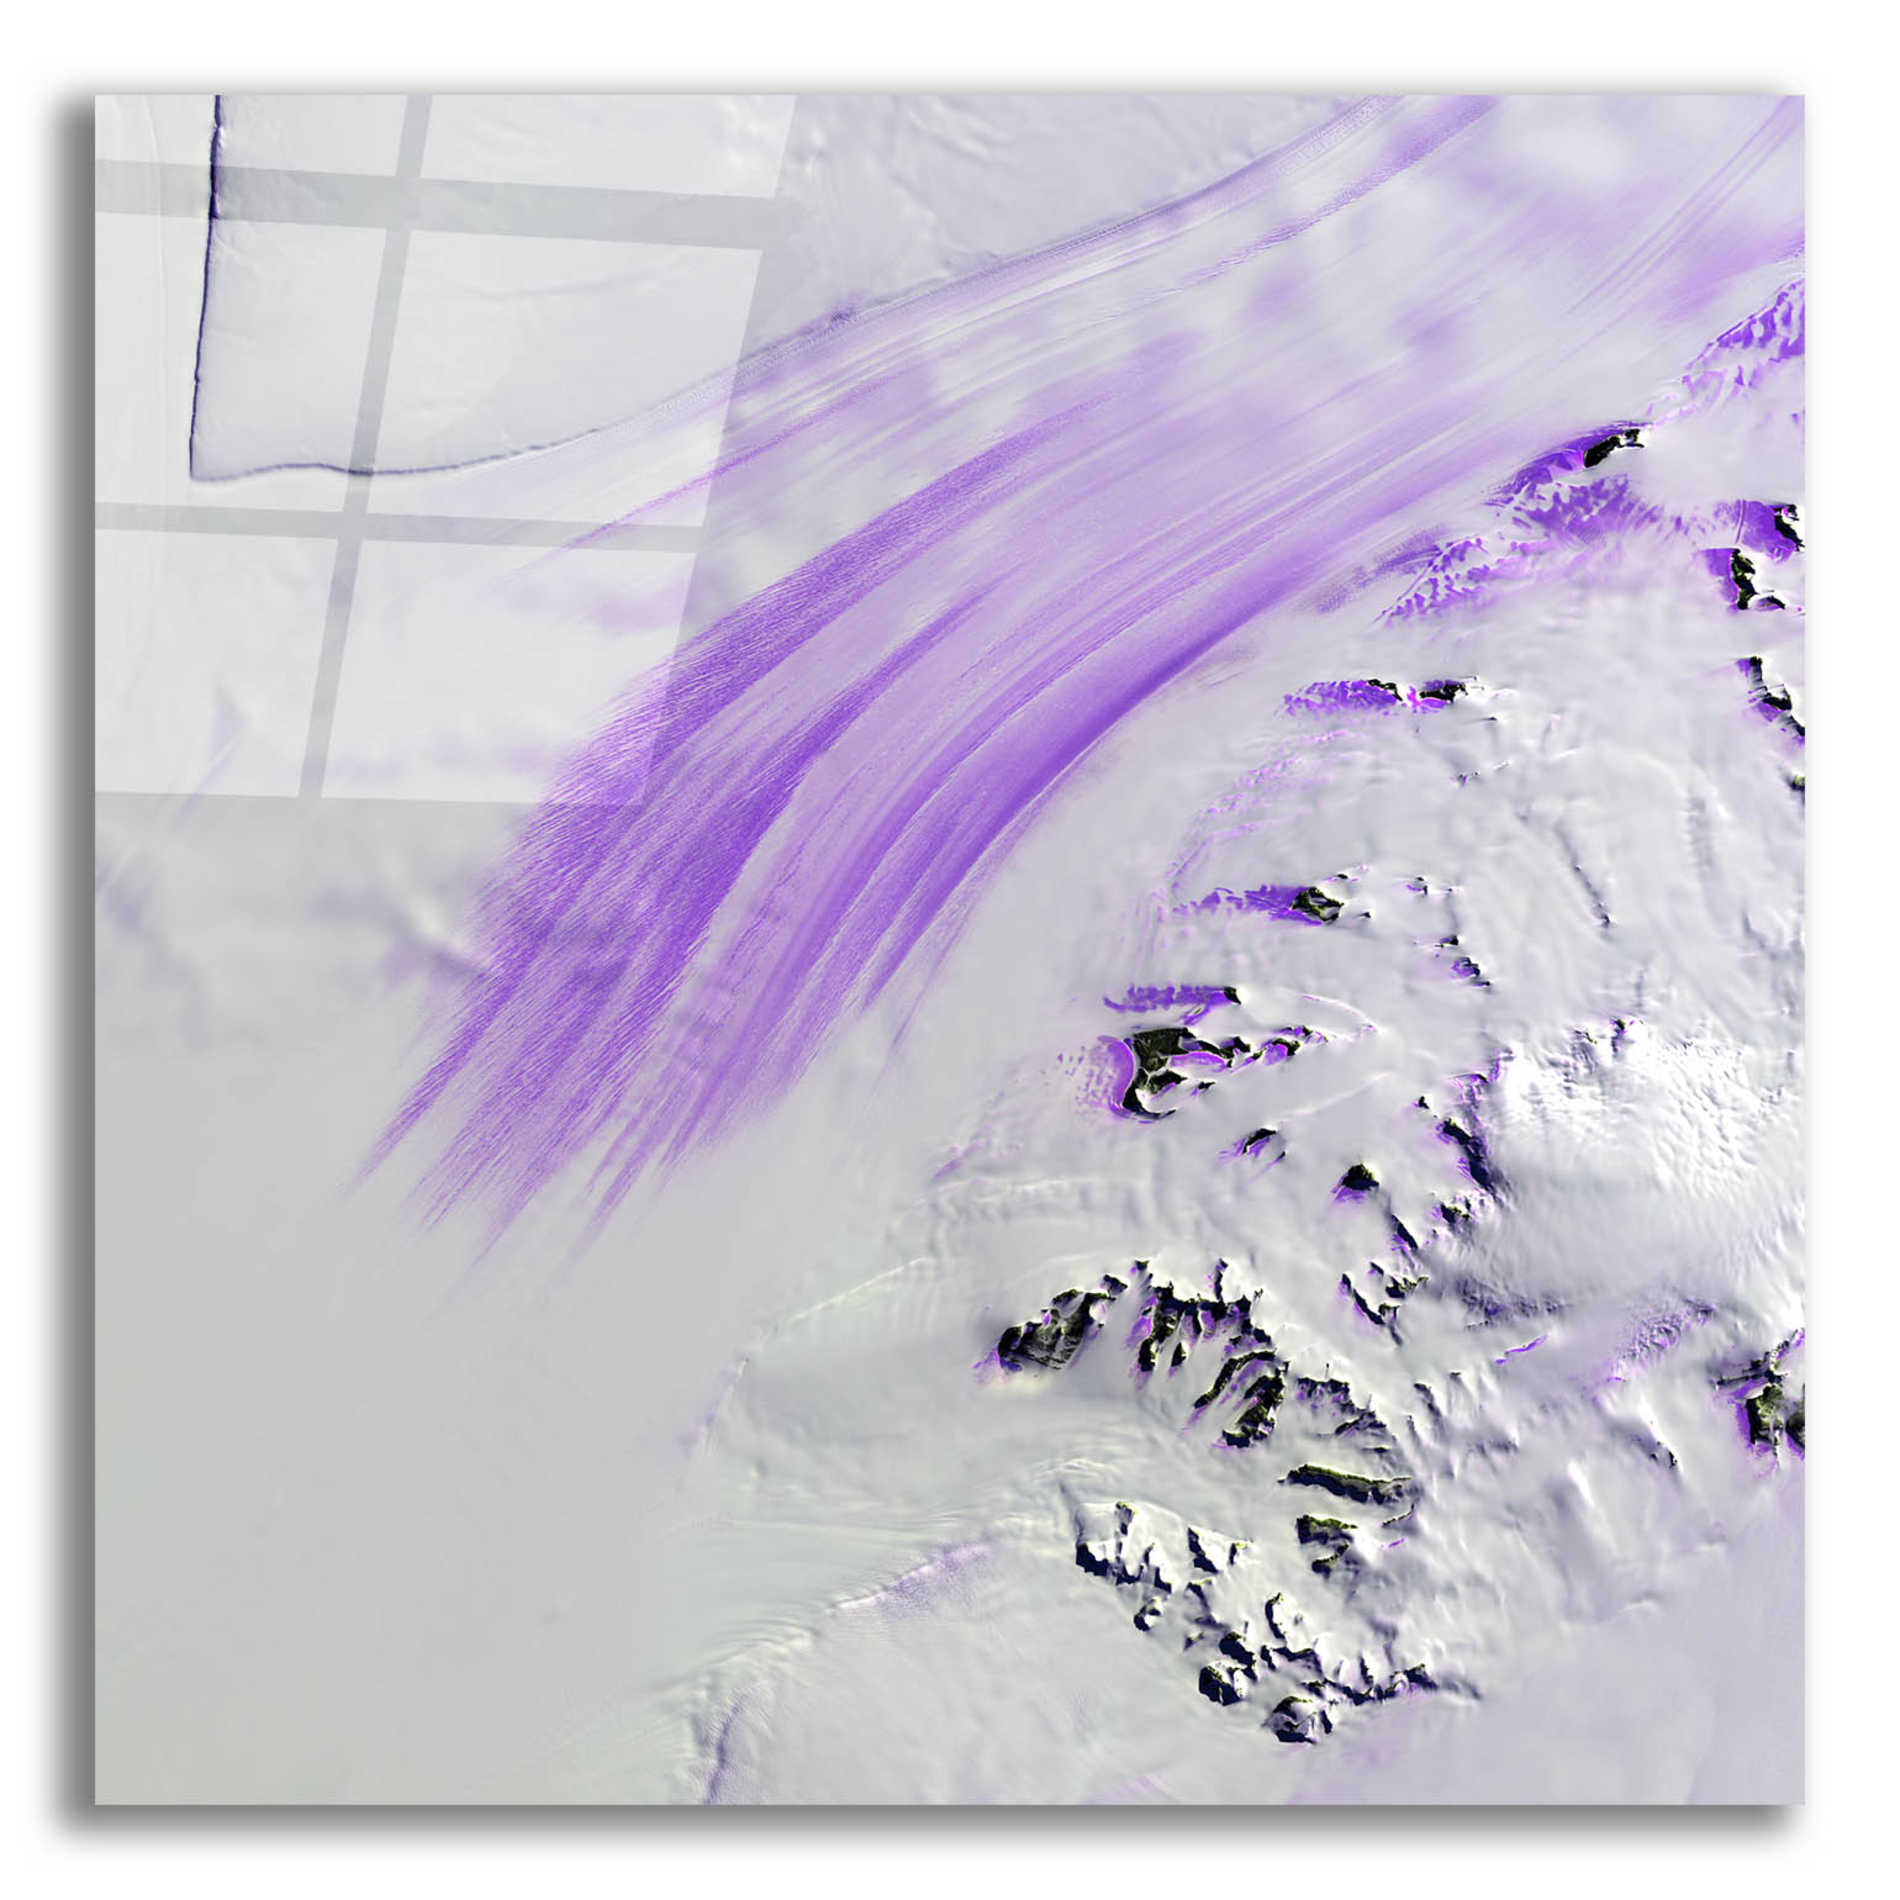 Epic Art 'Earth as Art: Slessor Glacier,' Acrylic Glass Wall Art,12x12x1.1x0,18x18x1.1x0,26x26x1.74x0,37x37x1.74x0